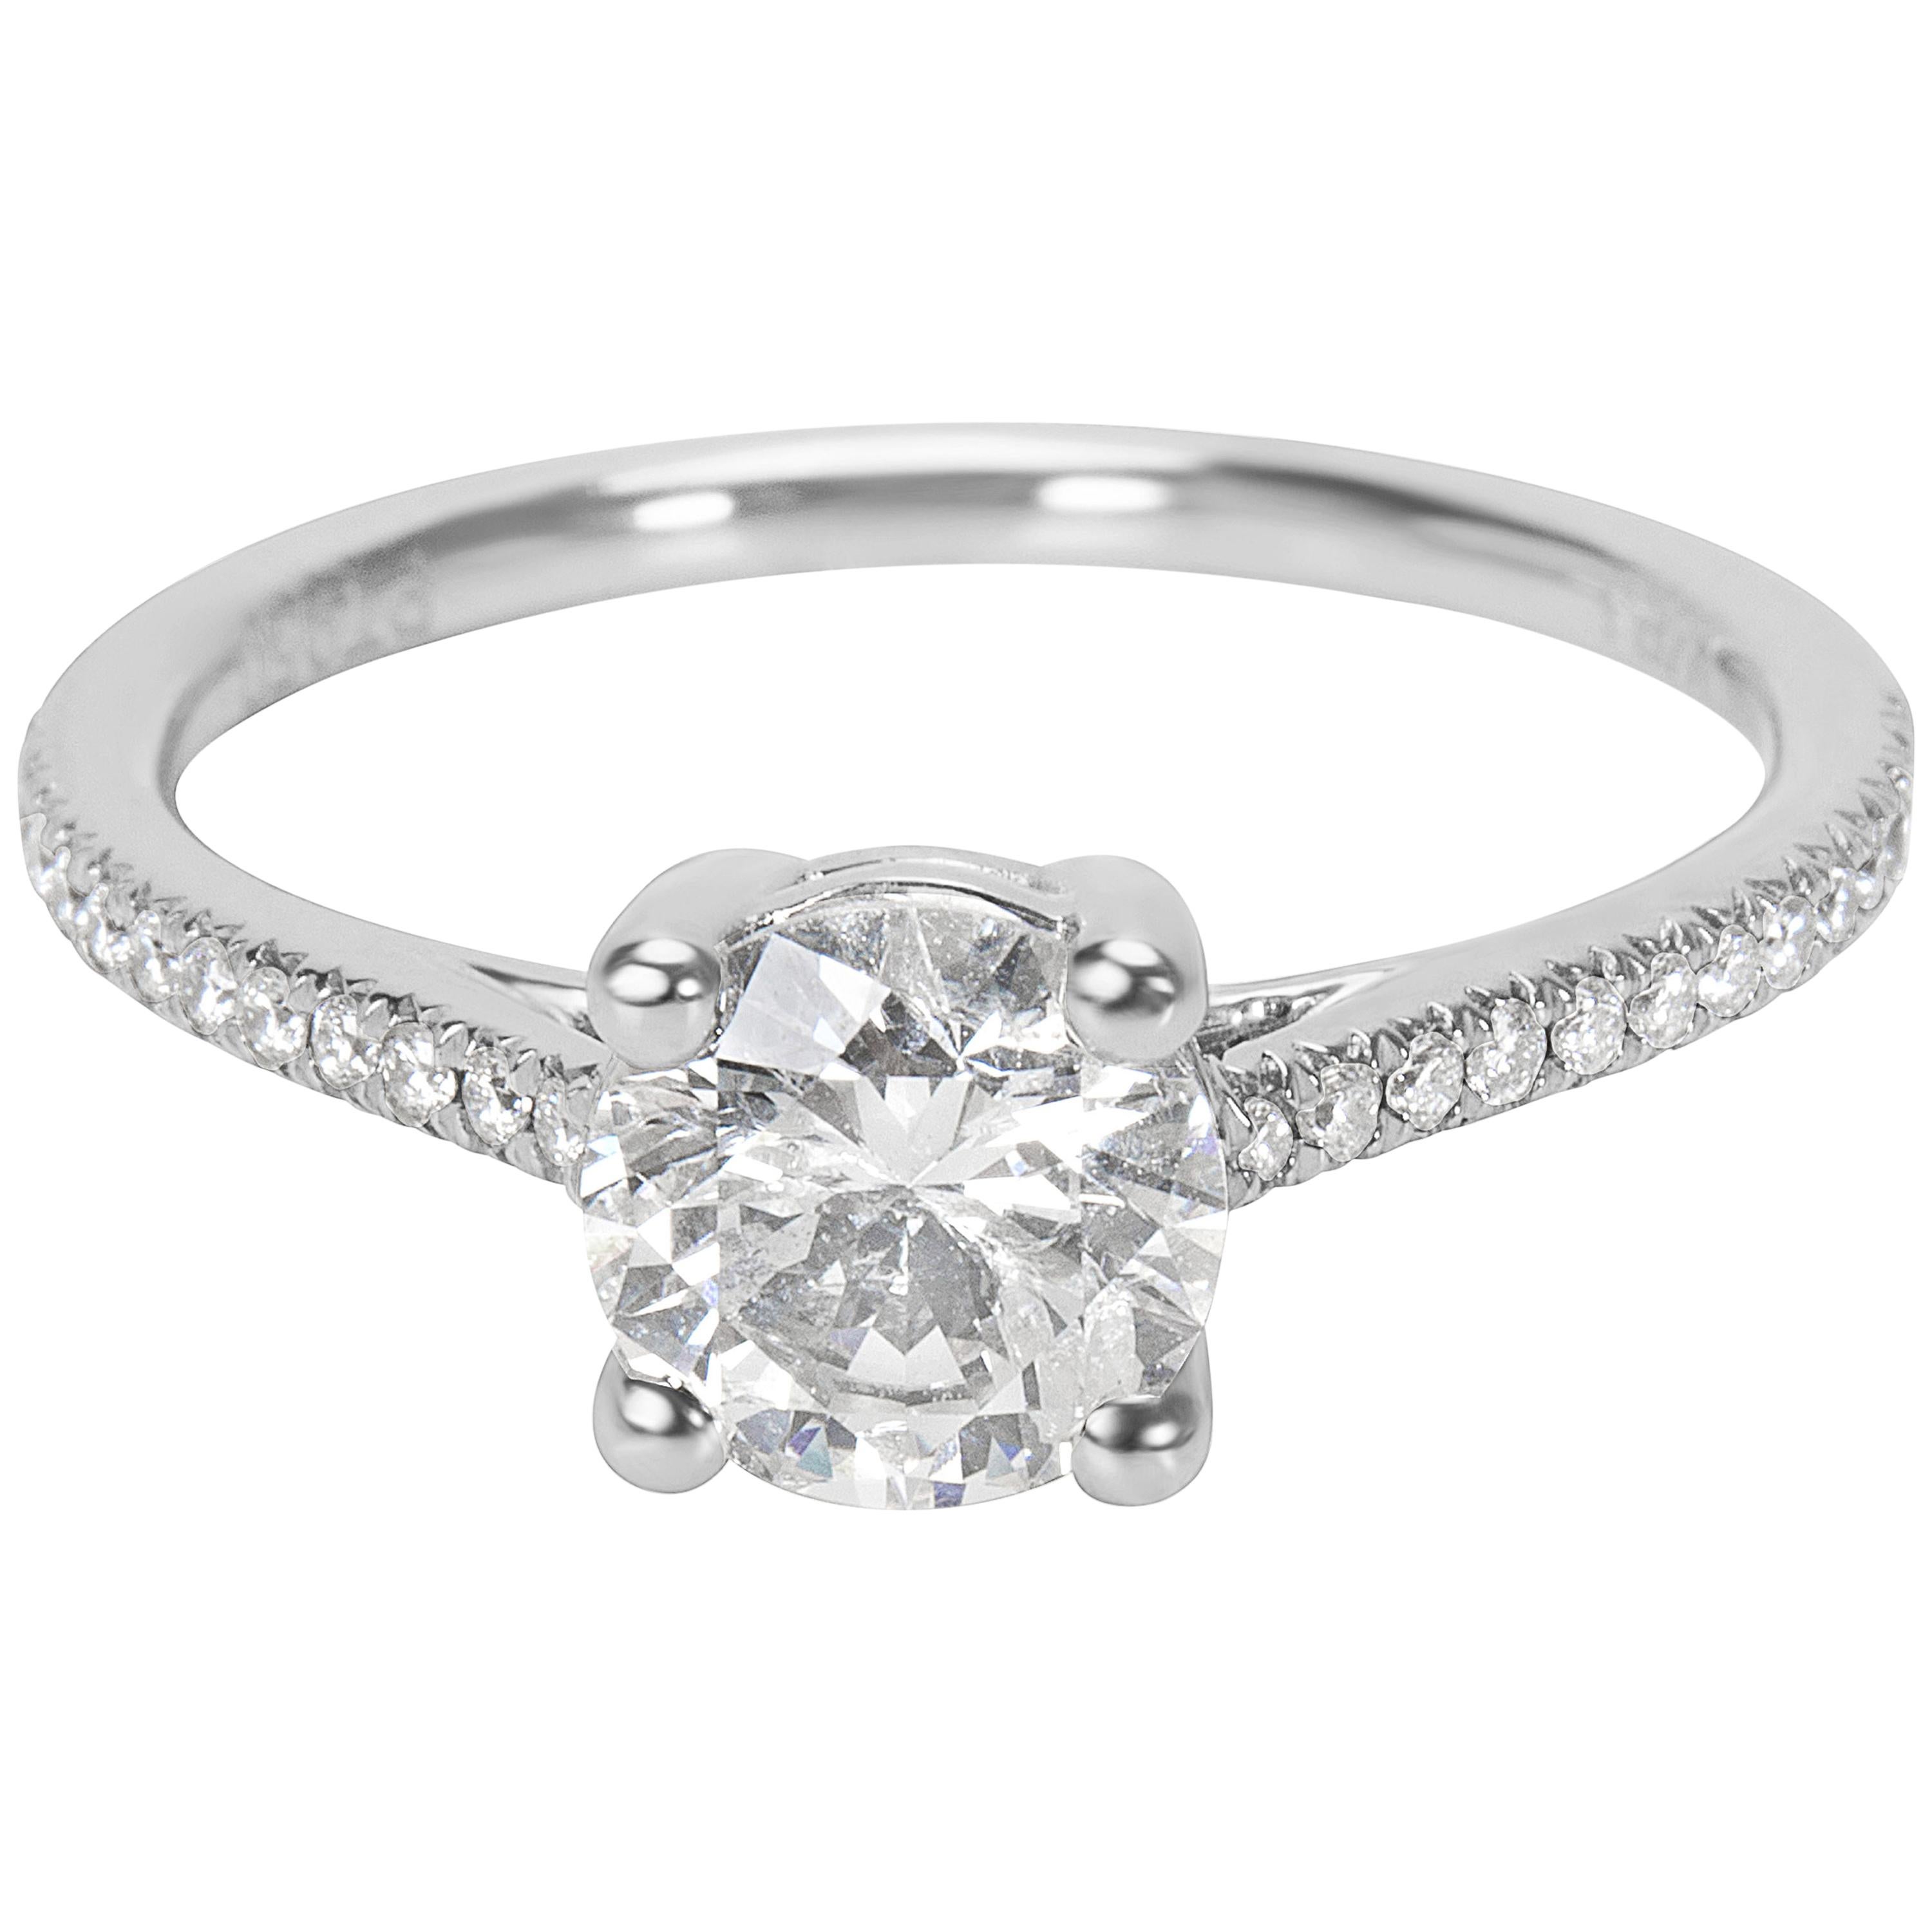 Round Cut Diamond Engagement Ring Set in Platinum 1.20 Carat